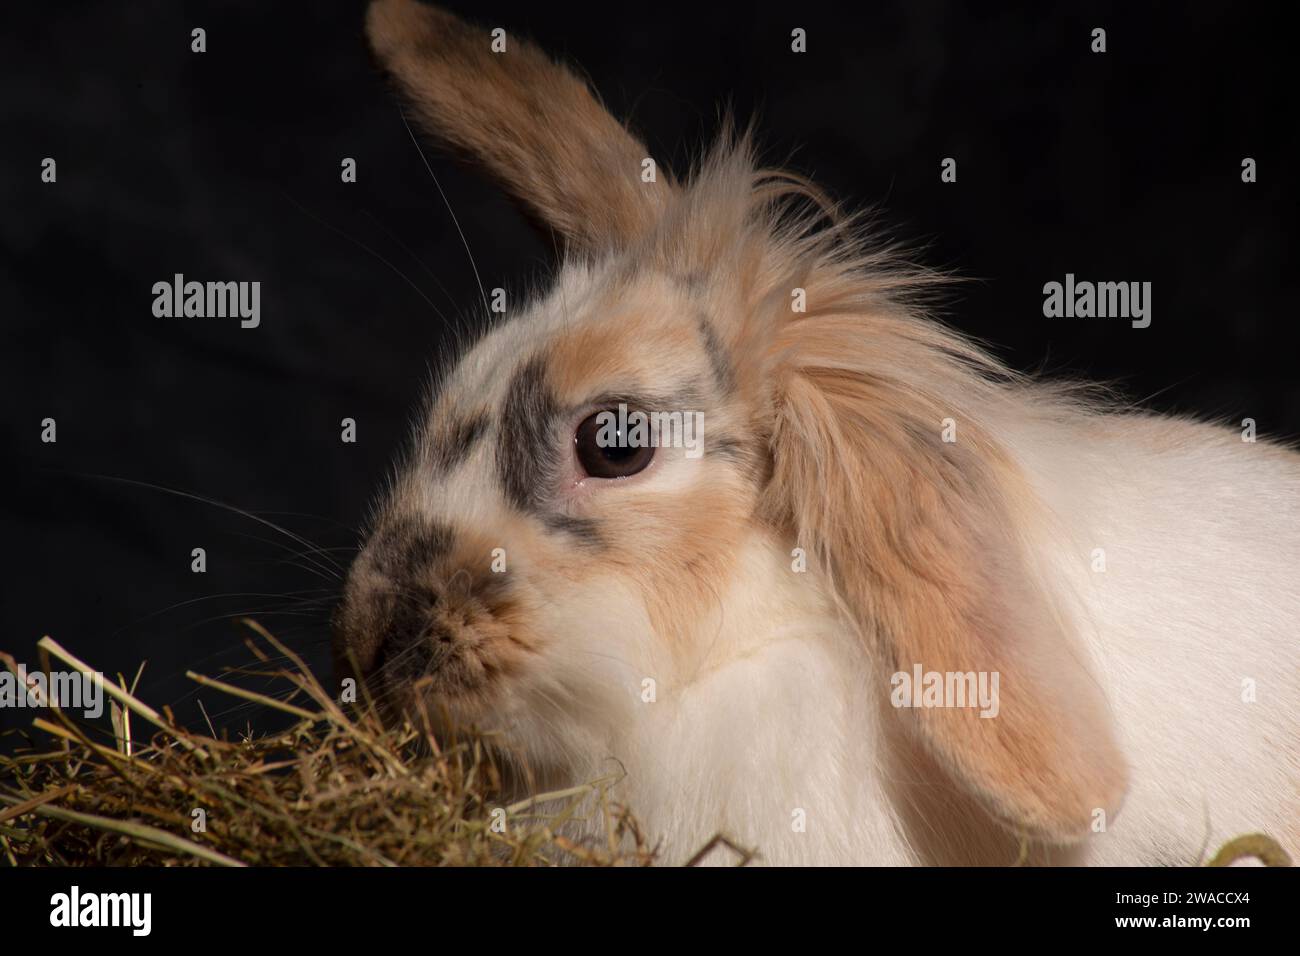 Un conejo mullido de cabeza de león oreja, irresistiblemente lindo, juguetonamente empuja su cabeza en una cesta de picnic. Contra un telón de fondo oscuro Foto de stock